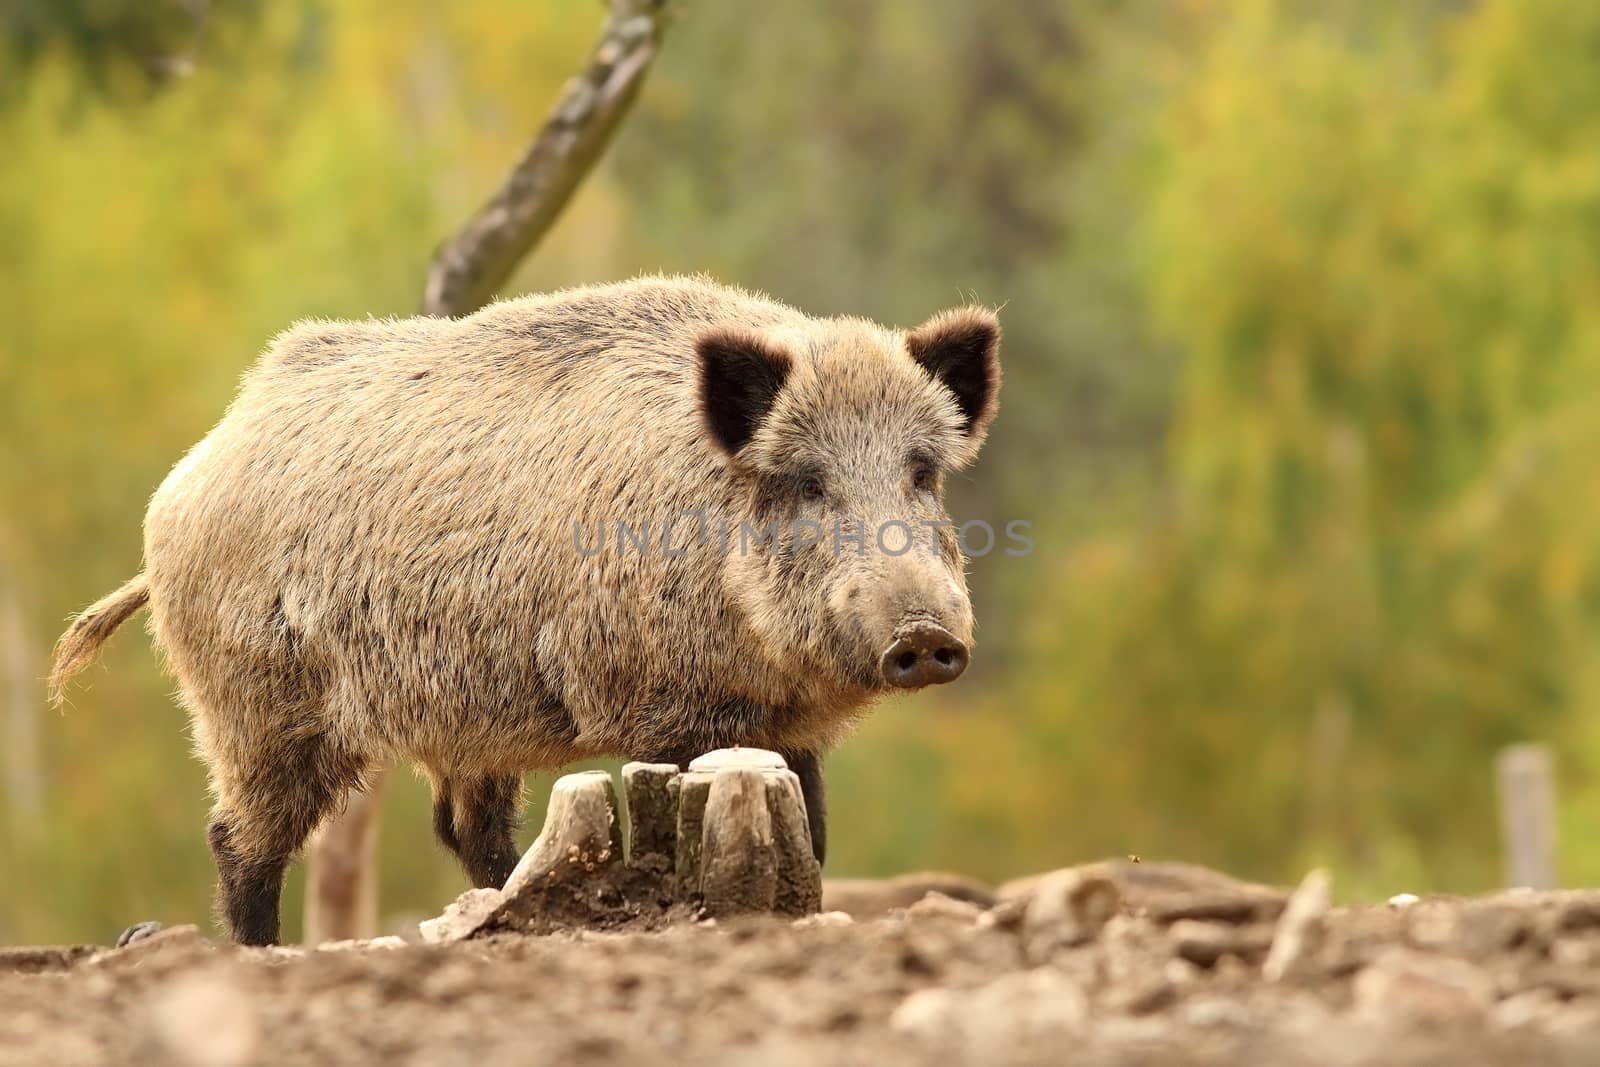 wild hog near stump by taviphoto